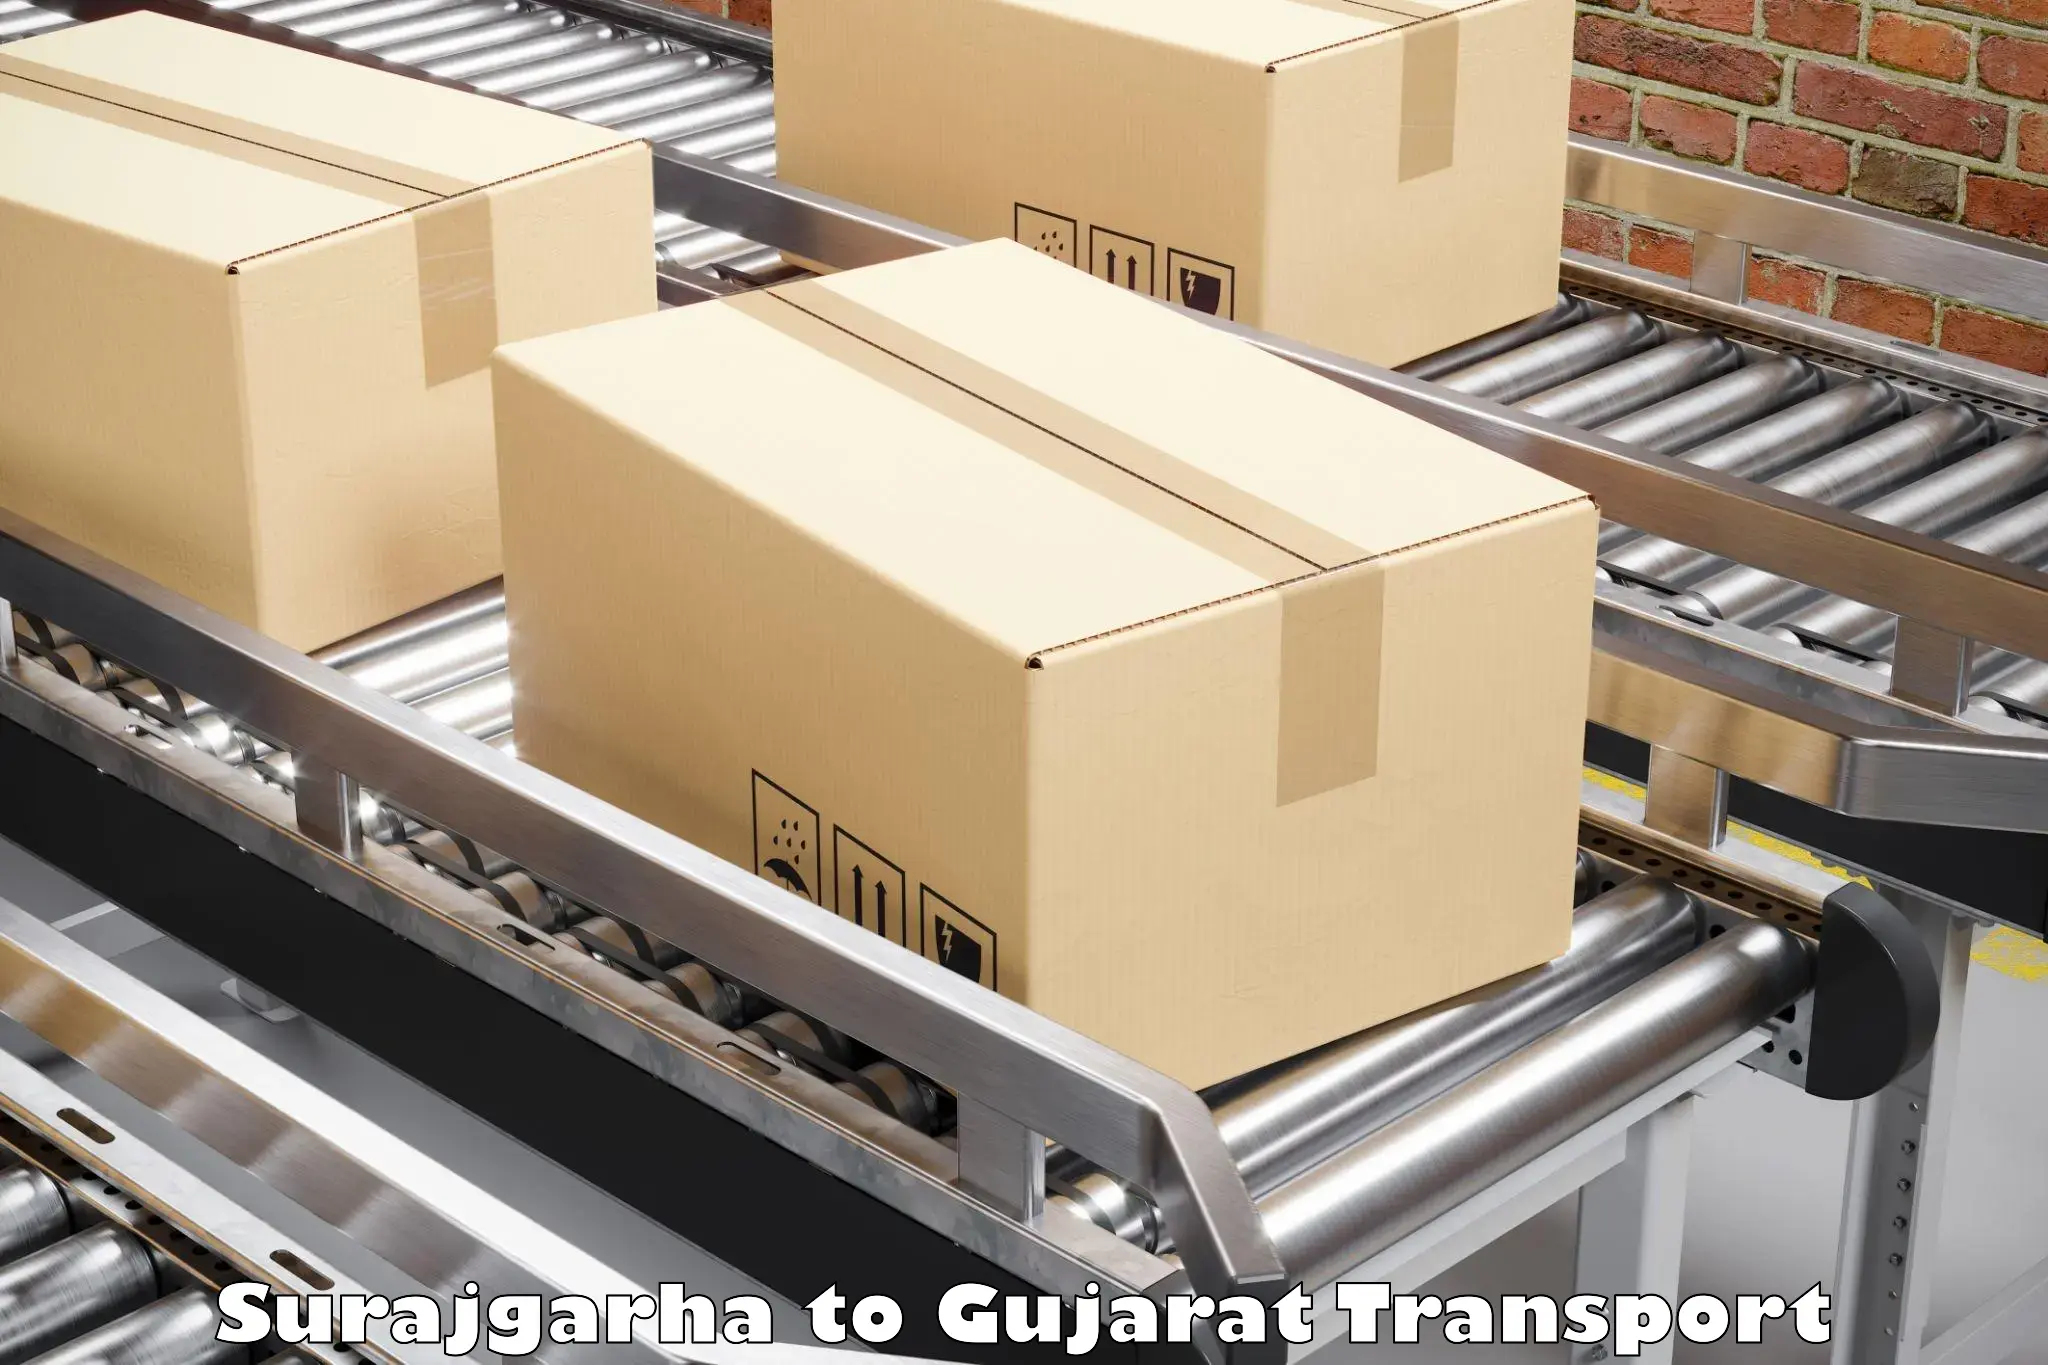 Transport in sharing Surajgarha to Palitana